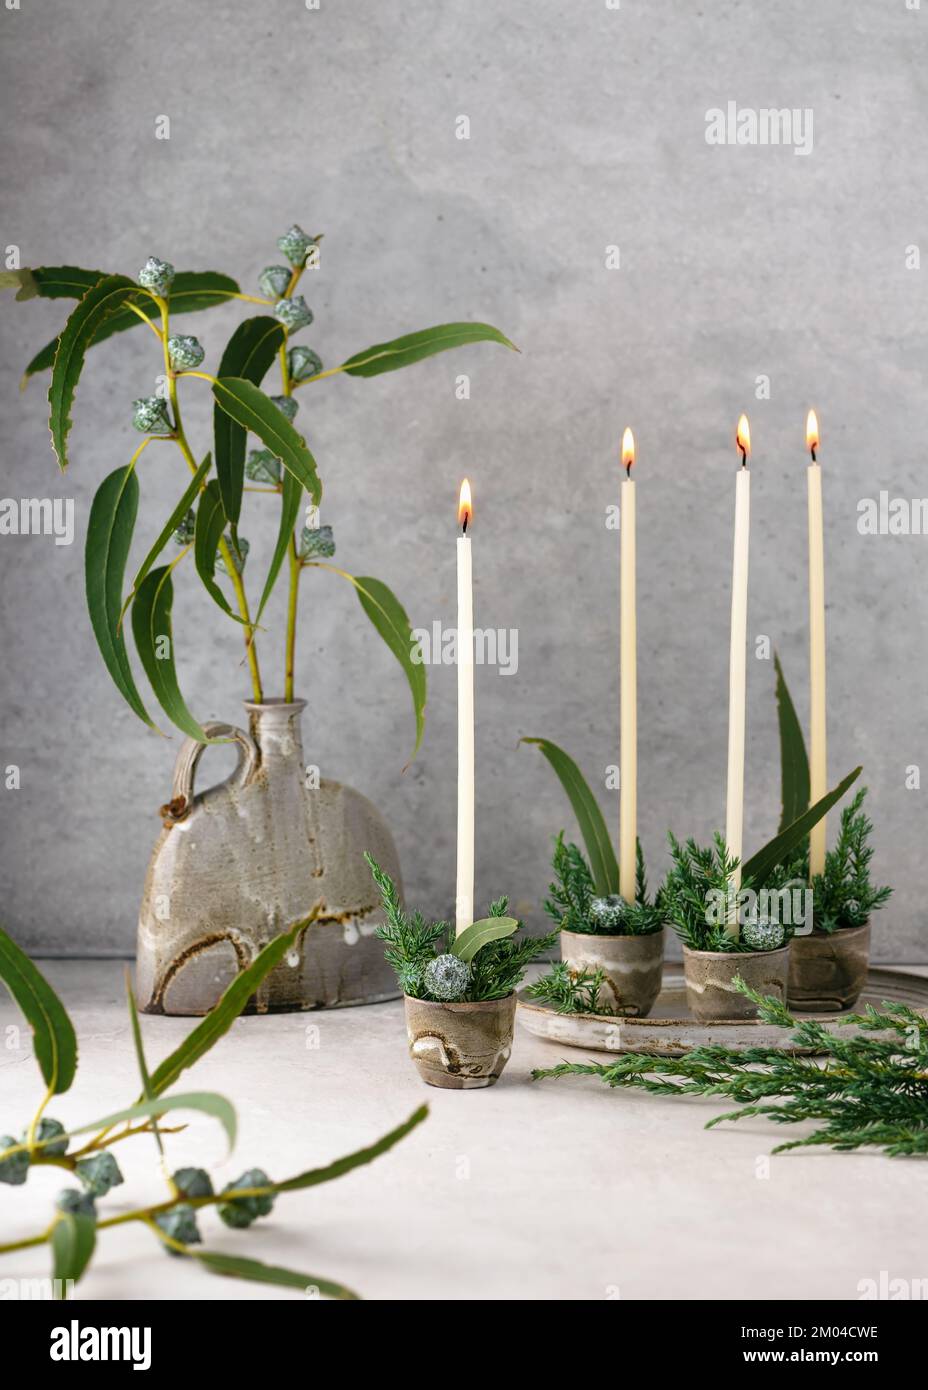 Wunderschönes Blumenarrangements im Winter mit weißen, schmalen Kerzen, Eukalyptusblättern und Früchten in vier Keramikbechern. Handgefertigte Weihnachtsdekor Stockfoto